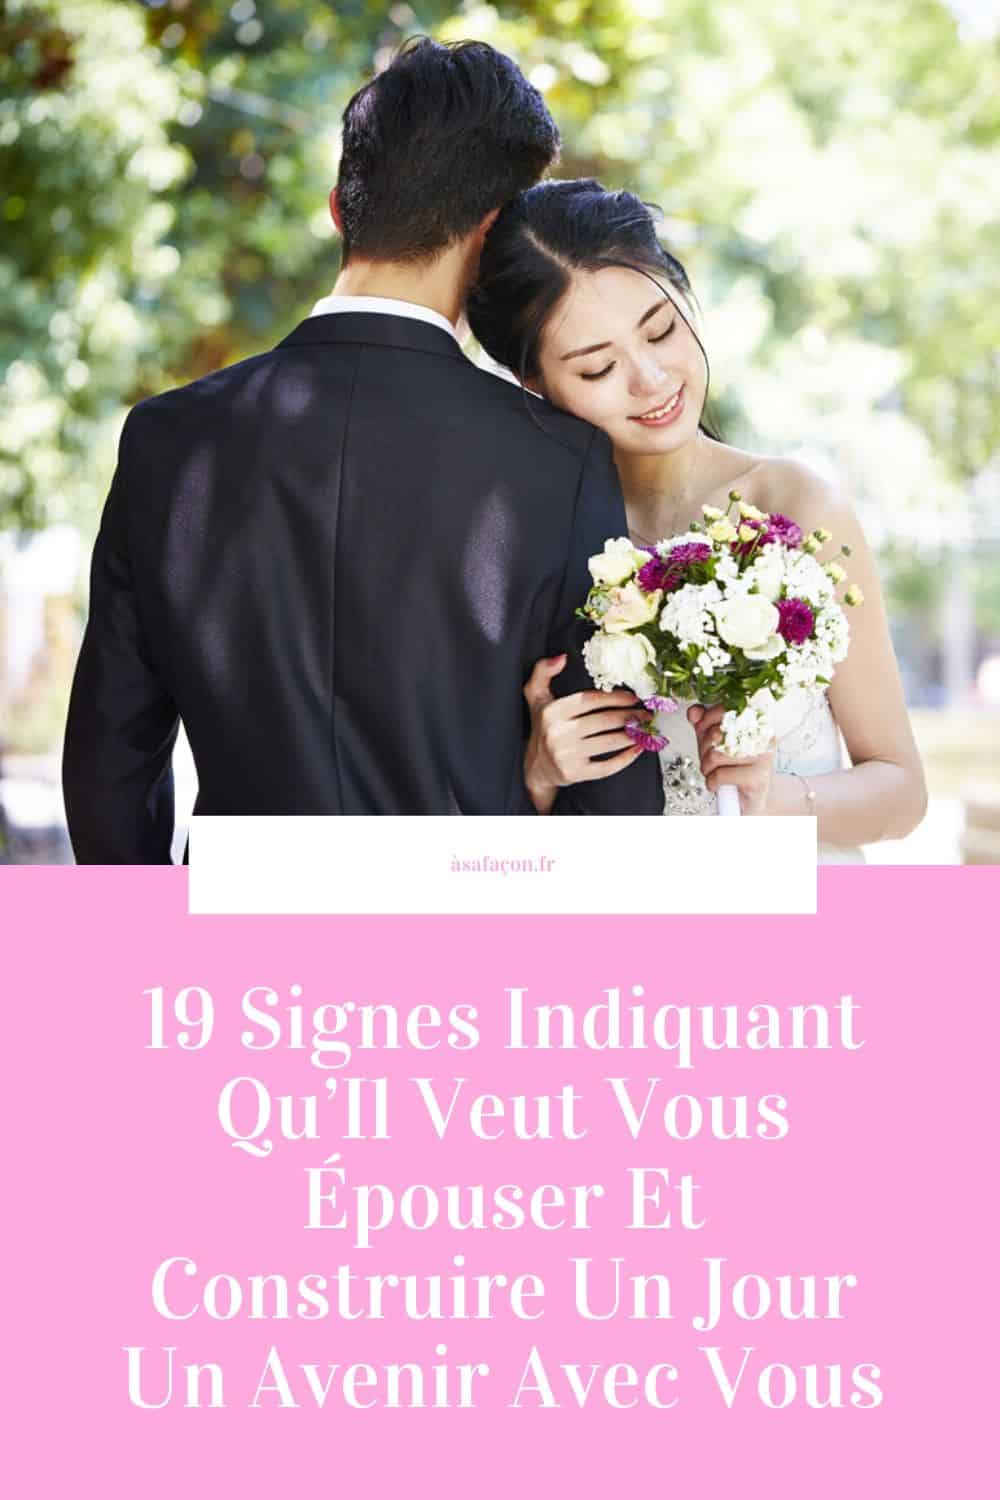 19 Signes Indiquant Qu’Il Veut Vous Épouser Et Construire Un Jour Un Avenir Avec Vous